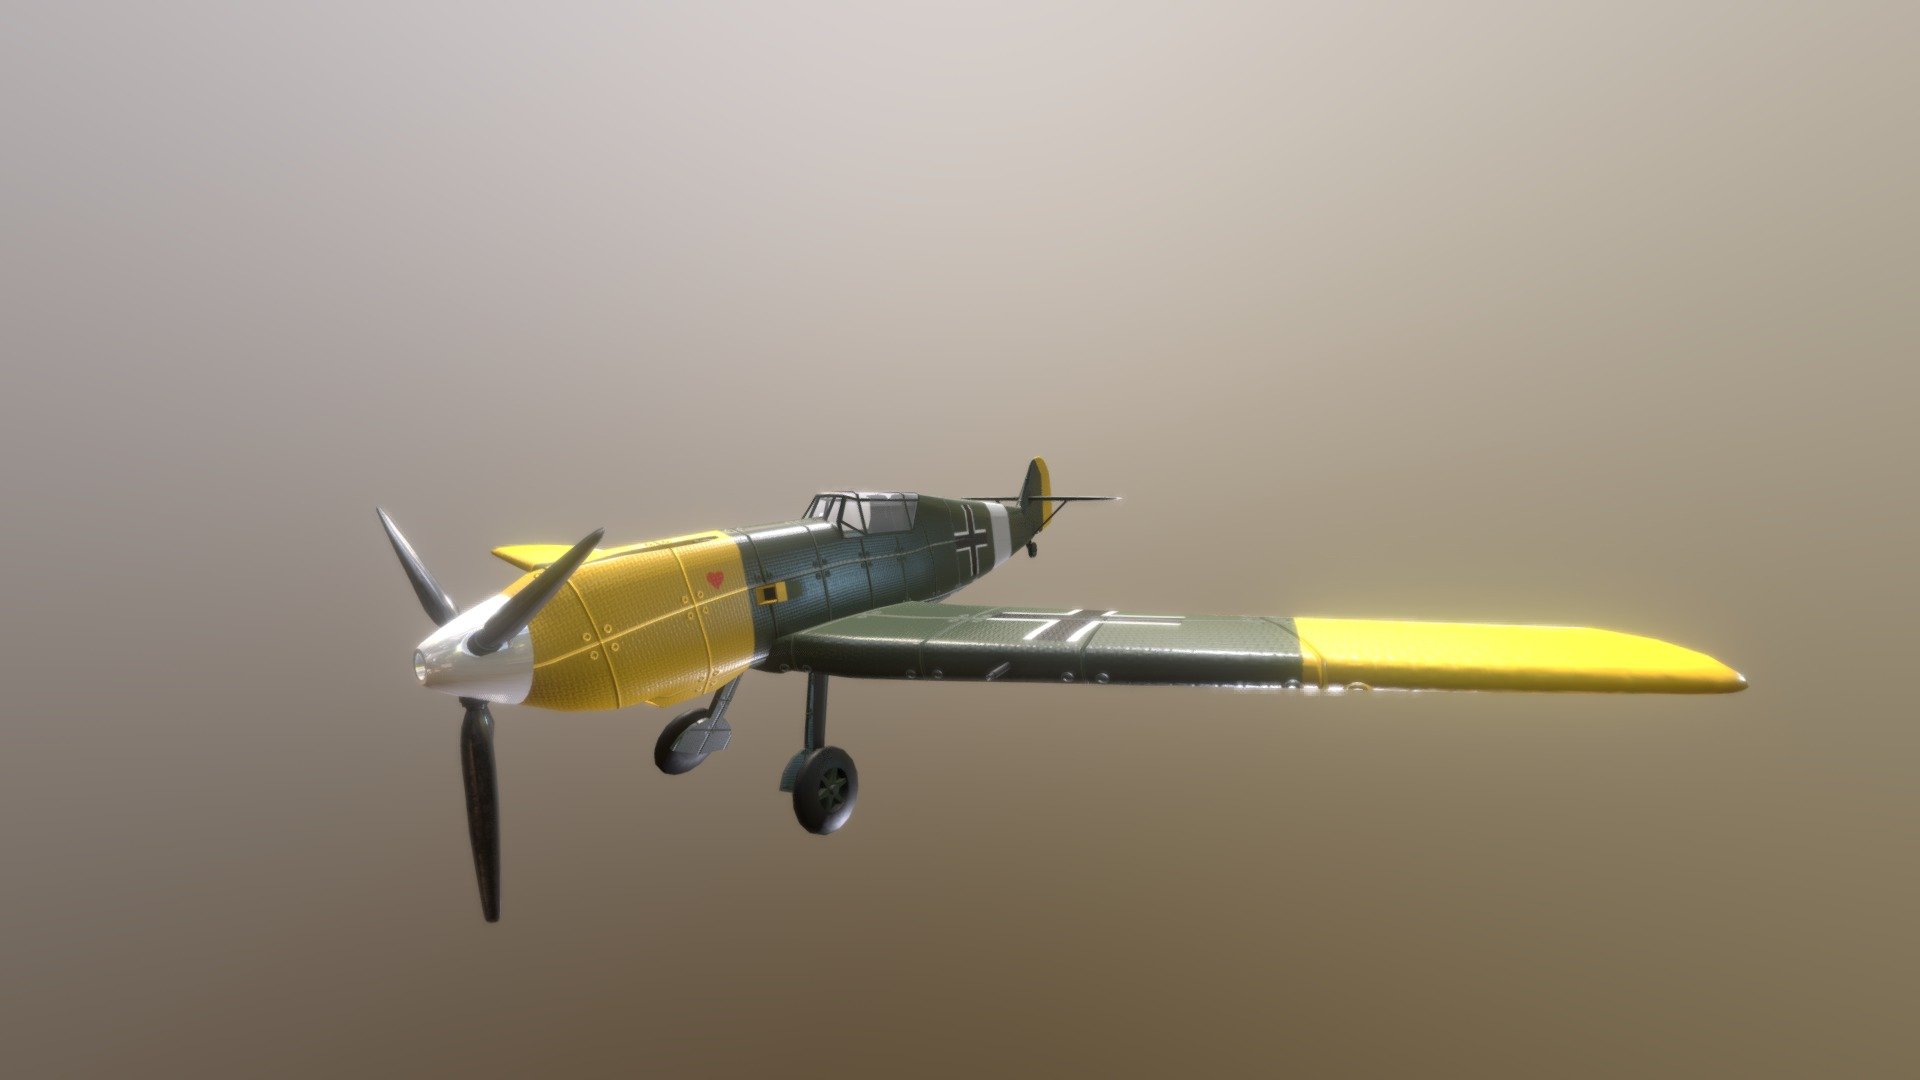 Bf109 E-4